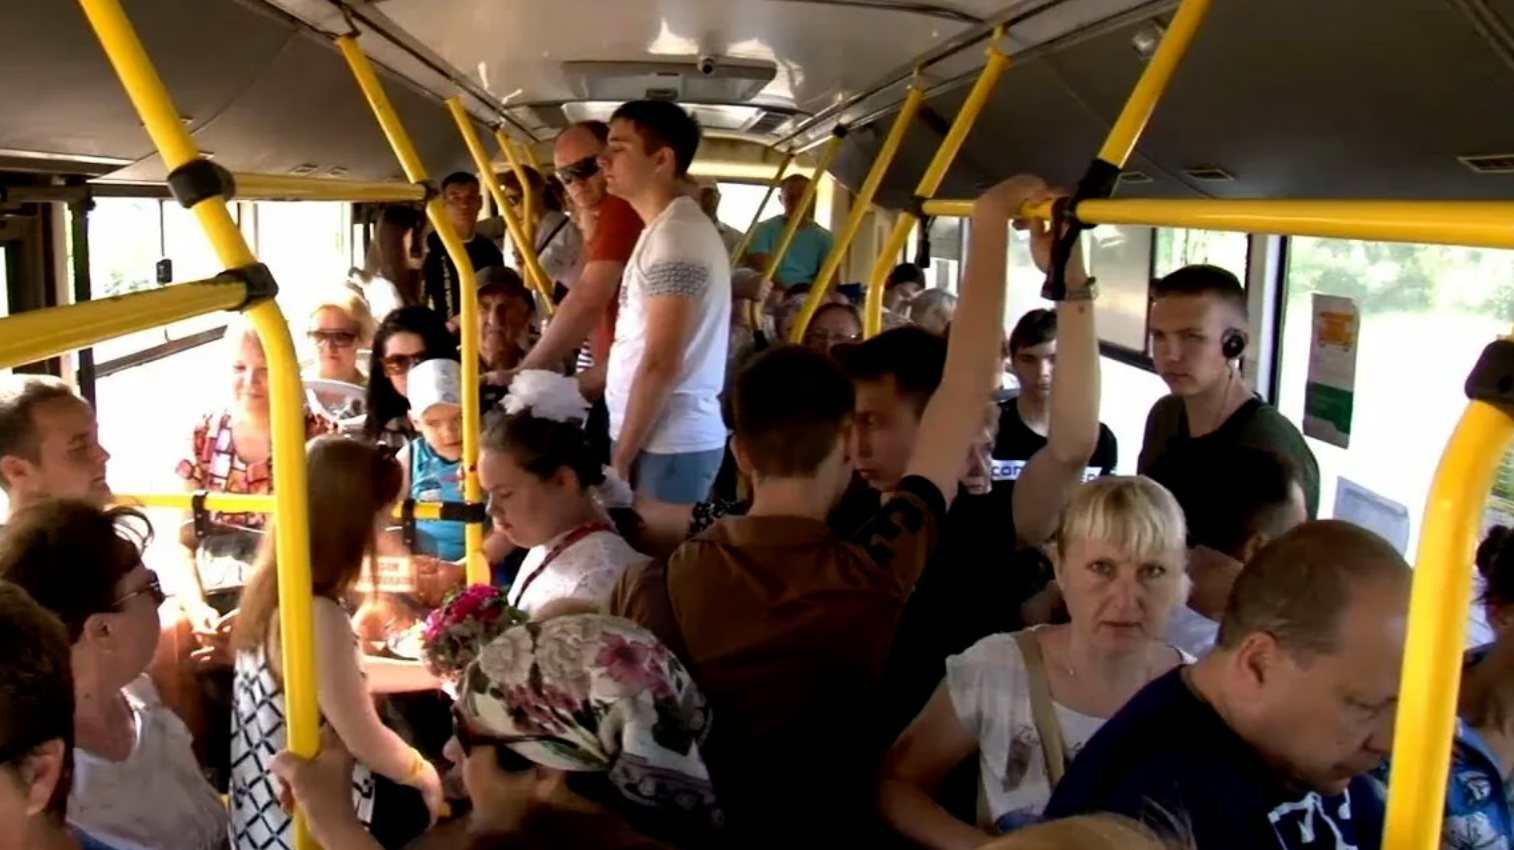 Много народу в автобусе. Толпа людей в автобусе. Автобус внутри с людьми. Толба люднц в автобему. Много людей в автобусе.